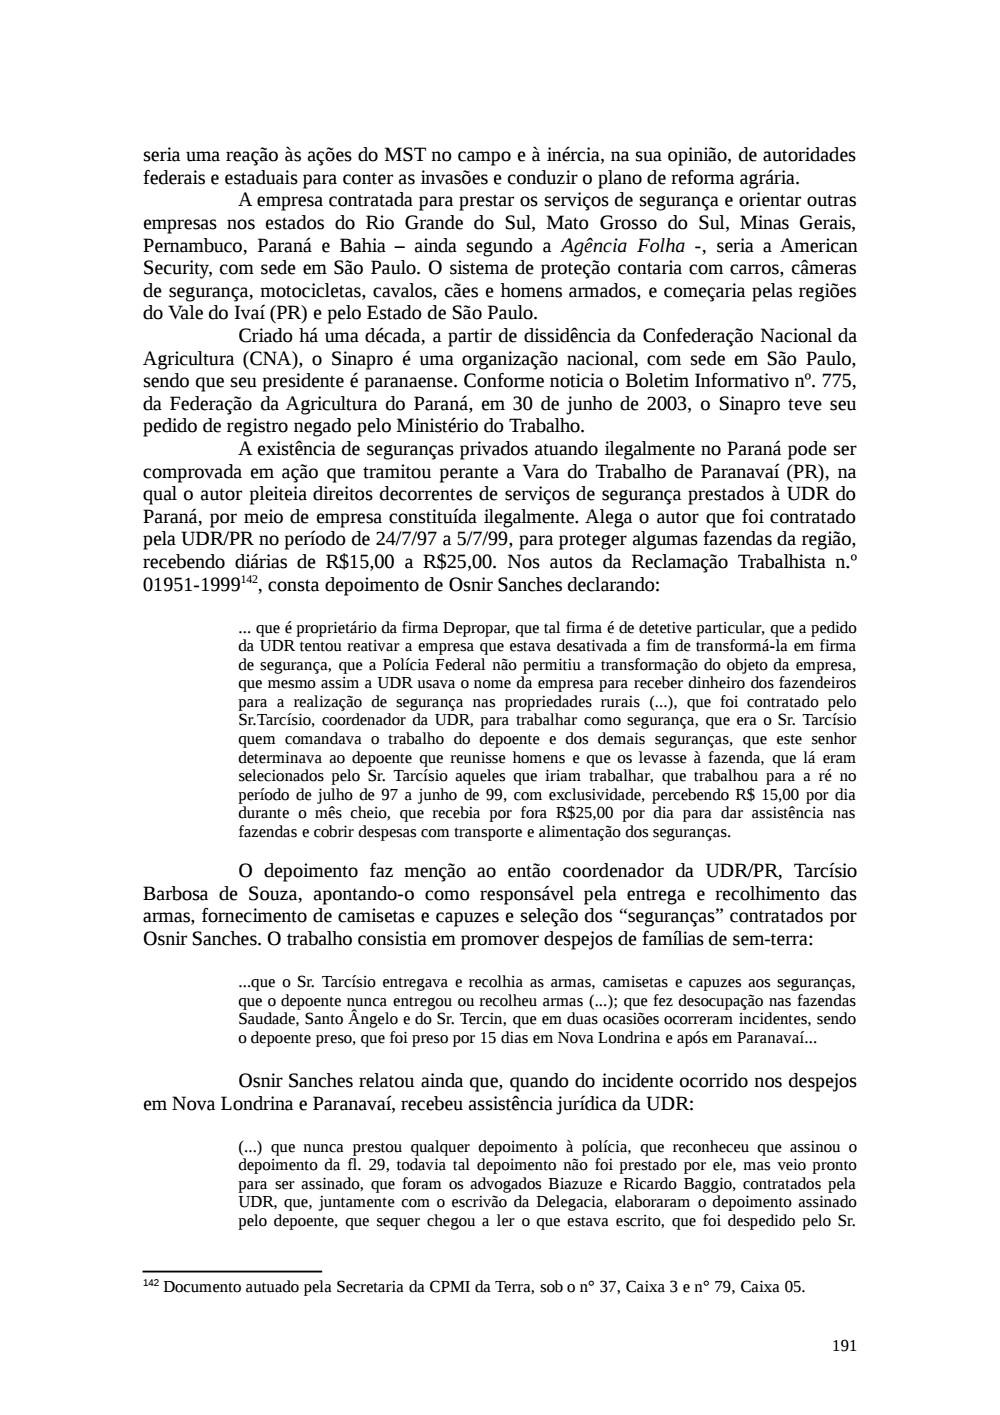 Page 191 from Relatório final da comissão